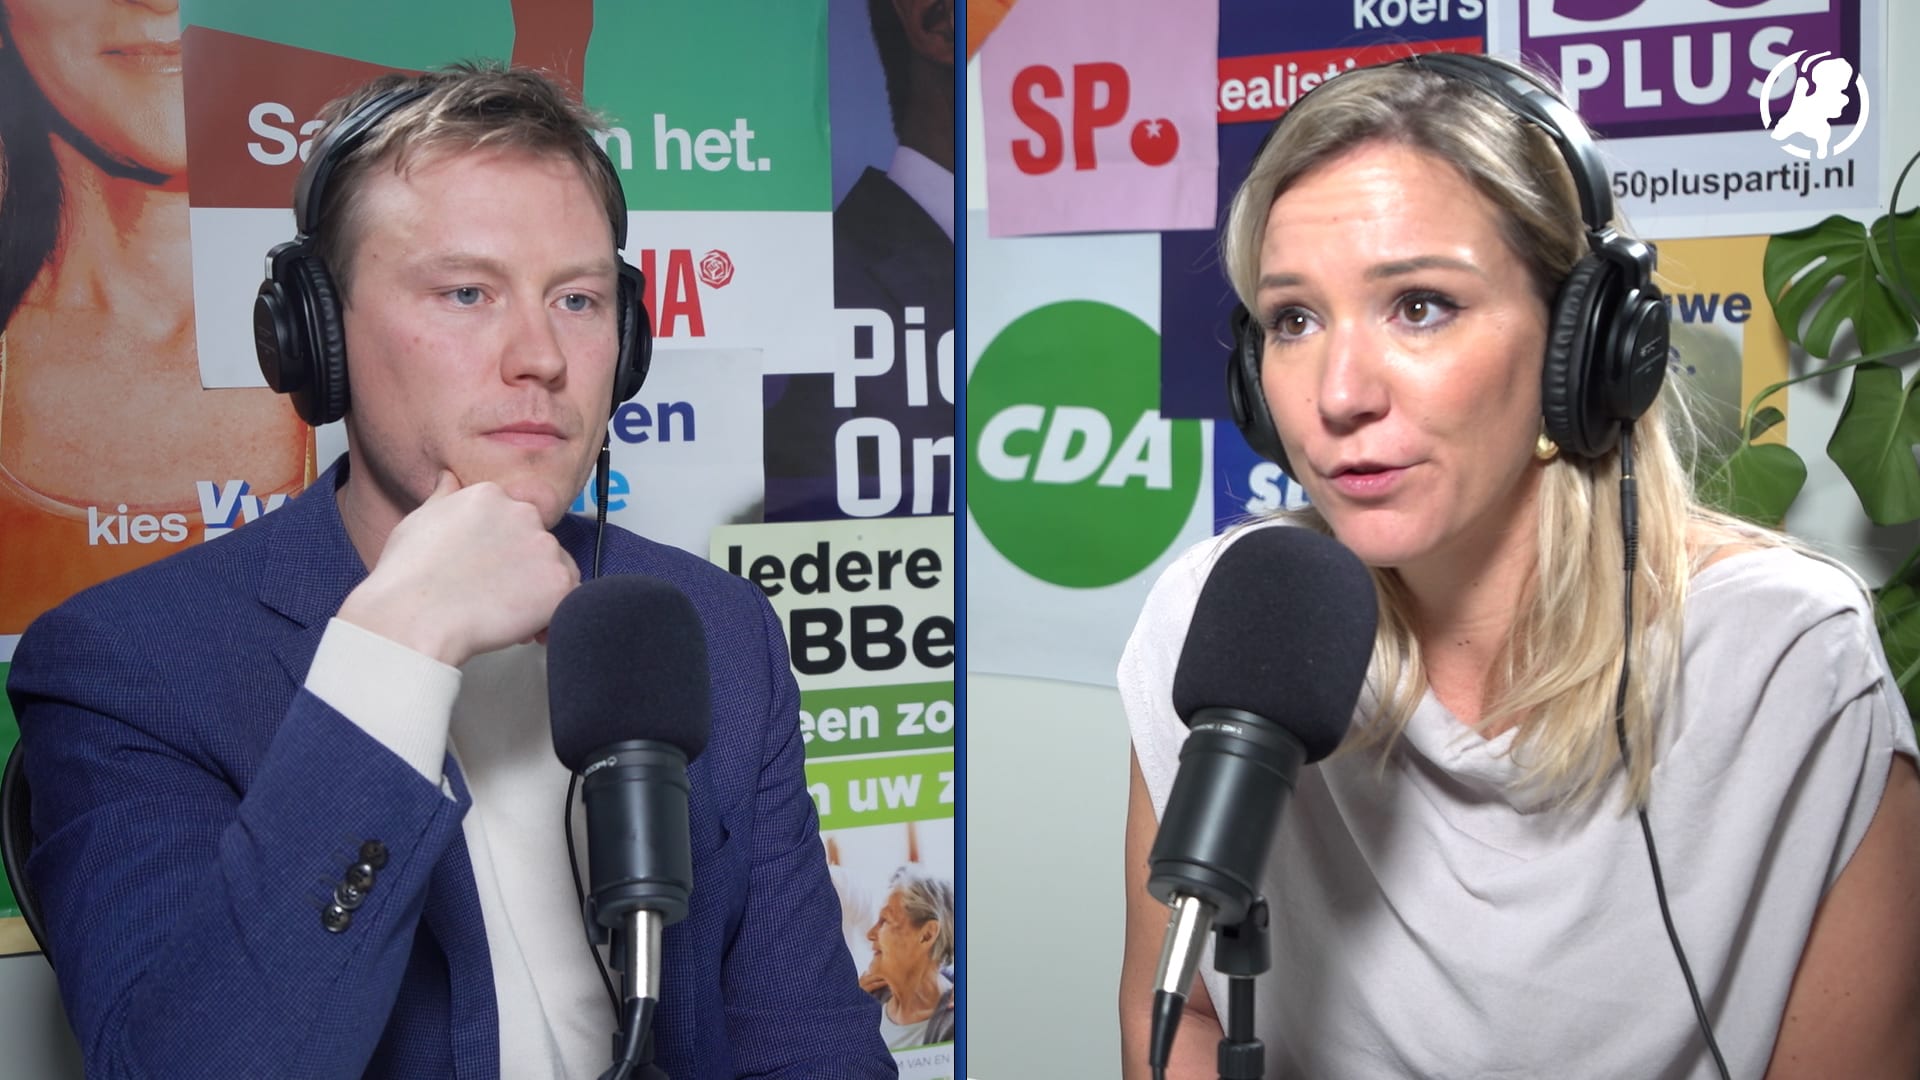 Journalist Elodie Verweij: 'Ik zag de paniek in de ogen van Wilders'